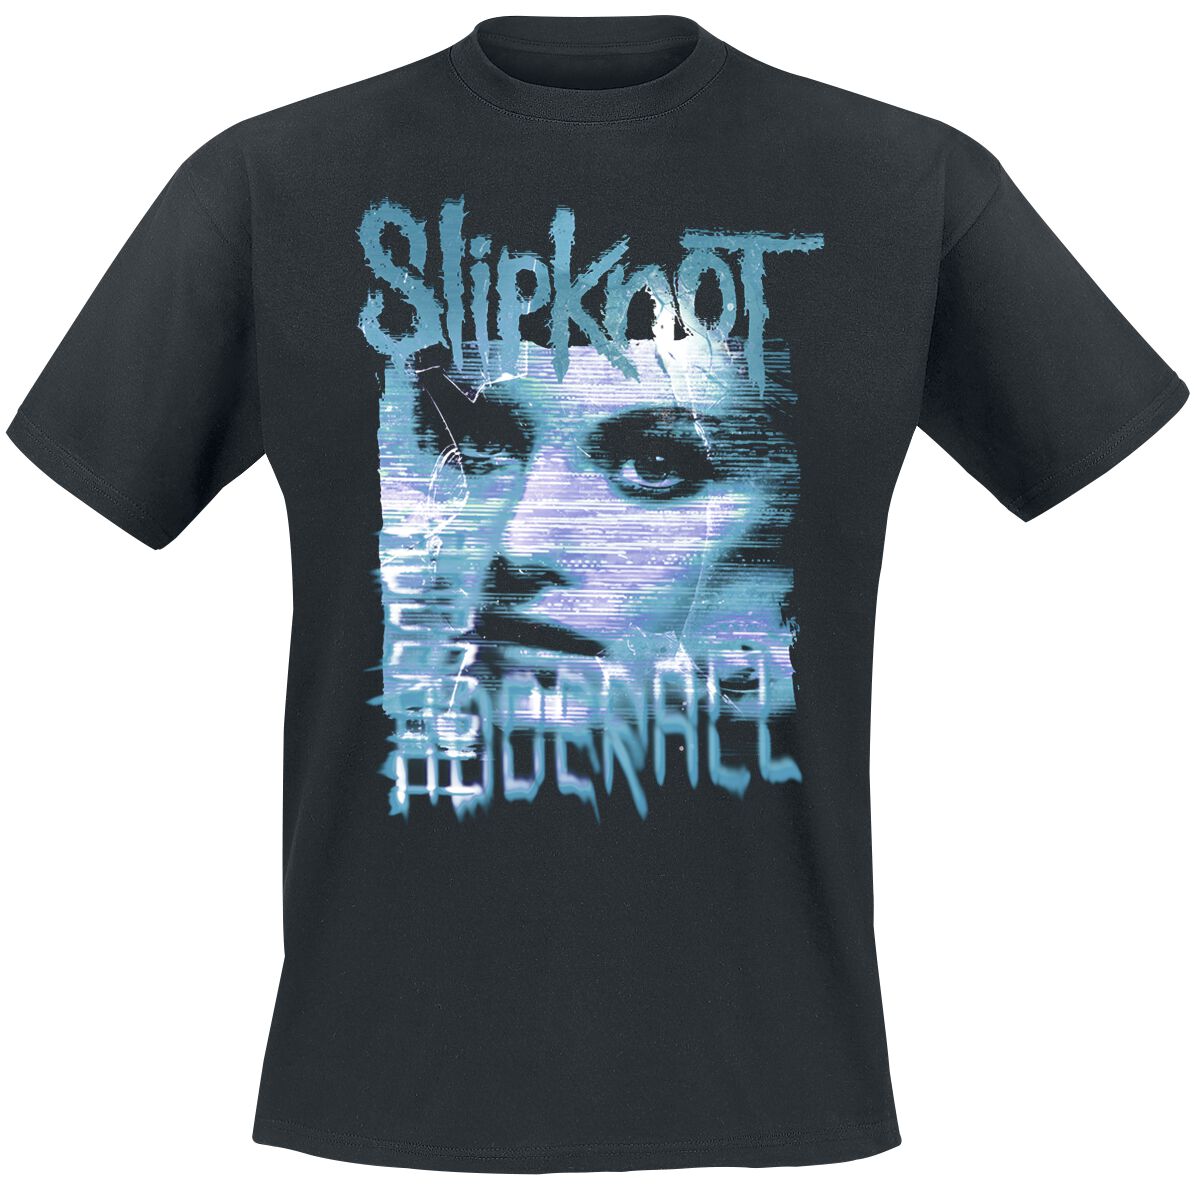 Slipknot Adderall Listener T-Shirt schwarz in S